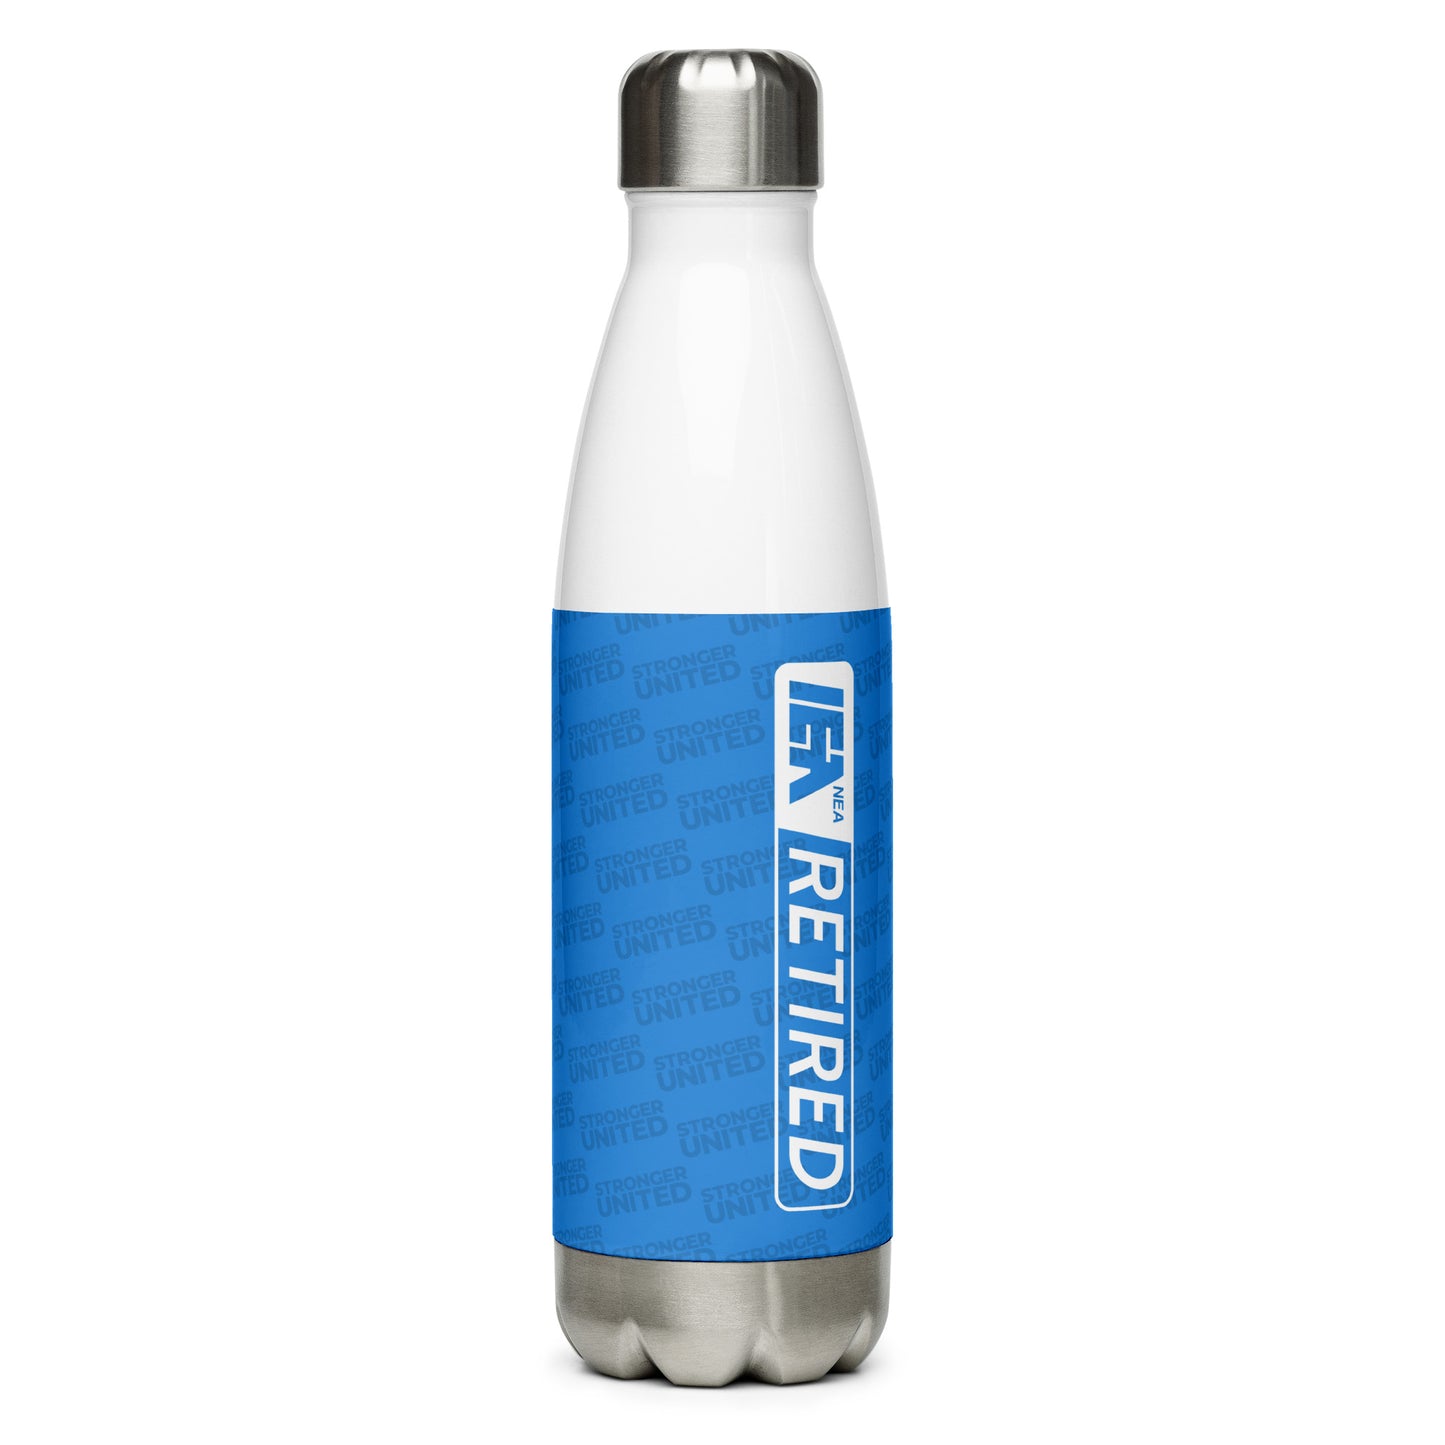 IEA Retired Stainless Steel Water Bottle